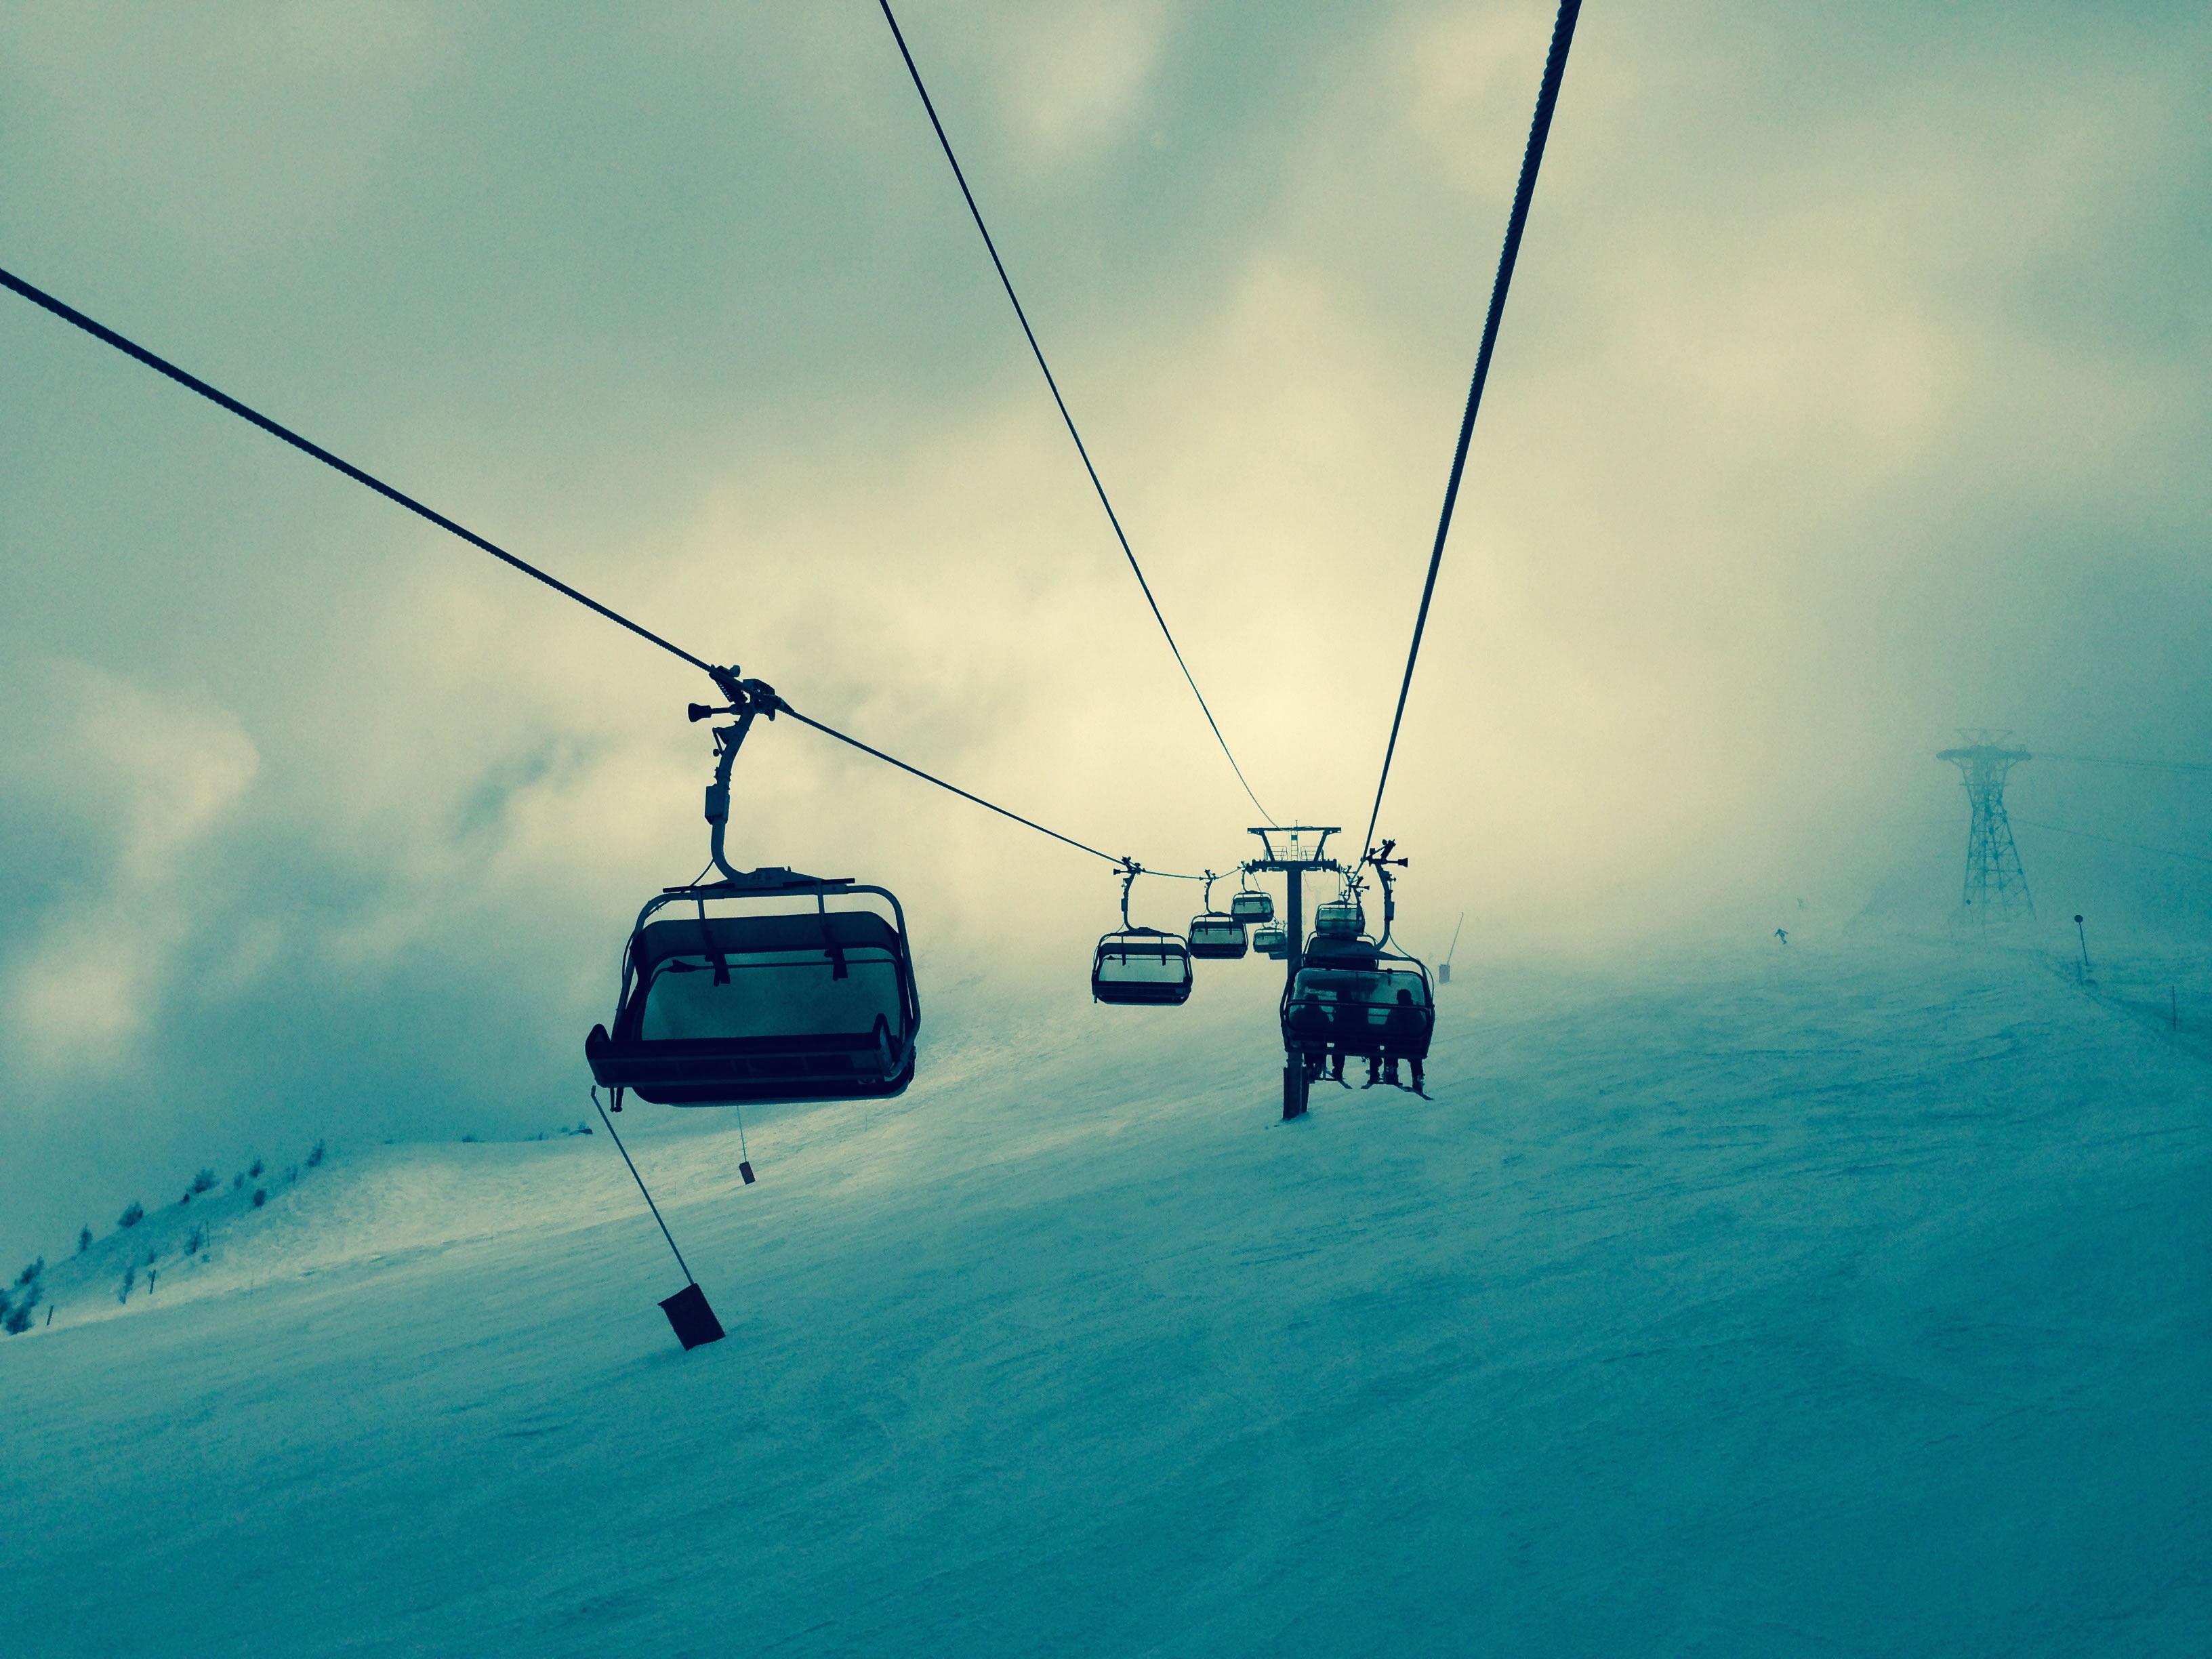 ski-lift-336534